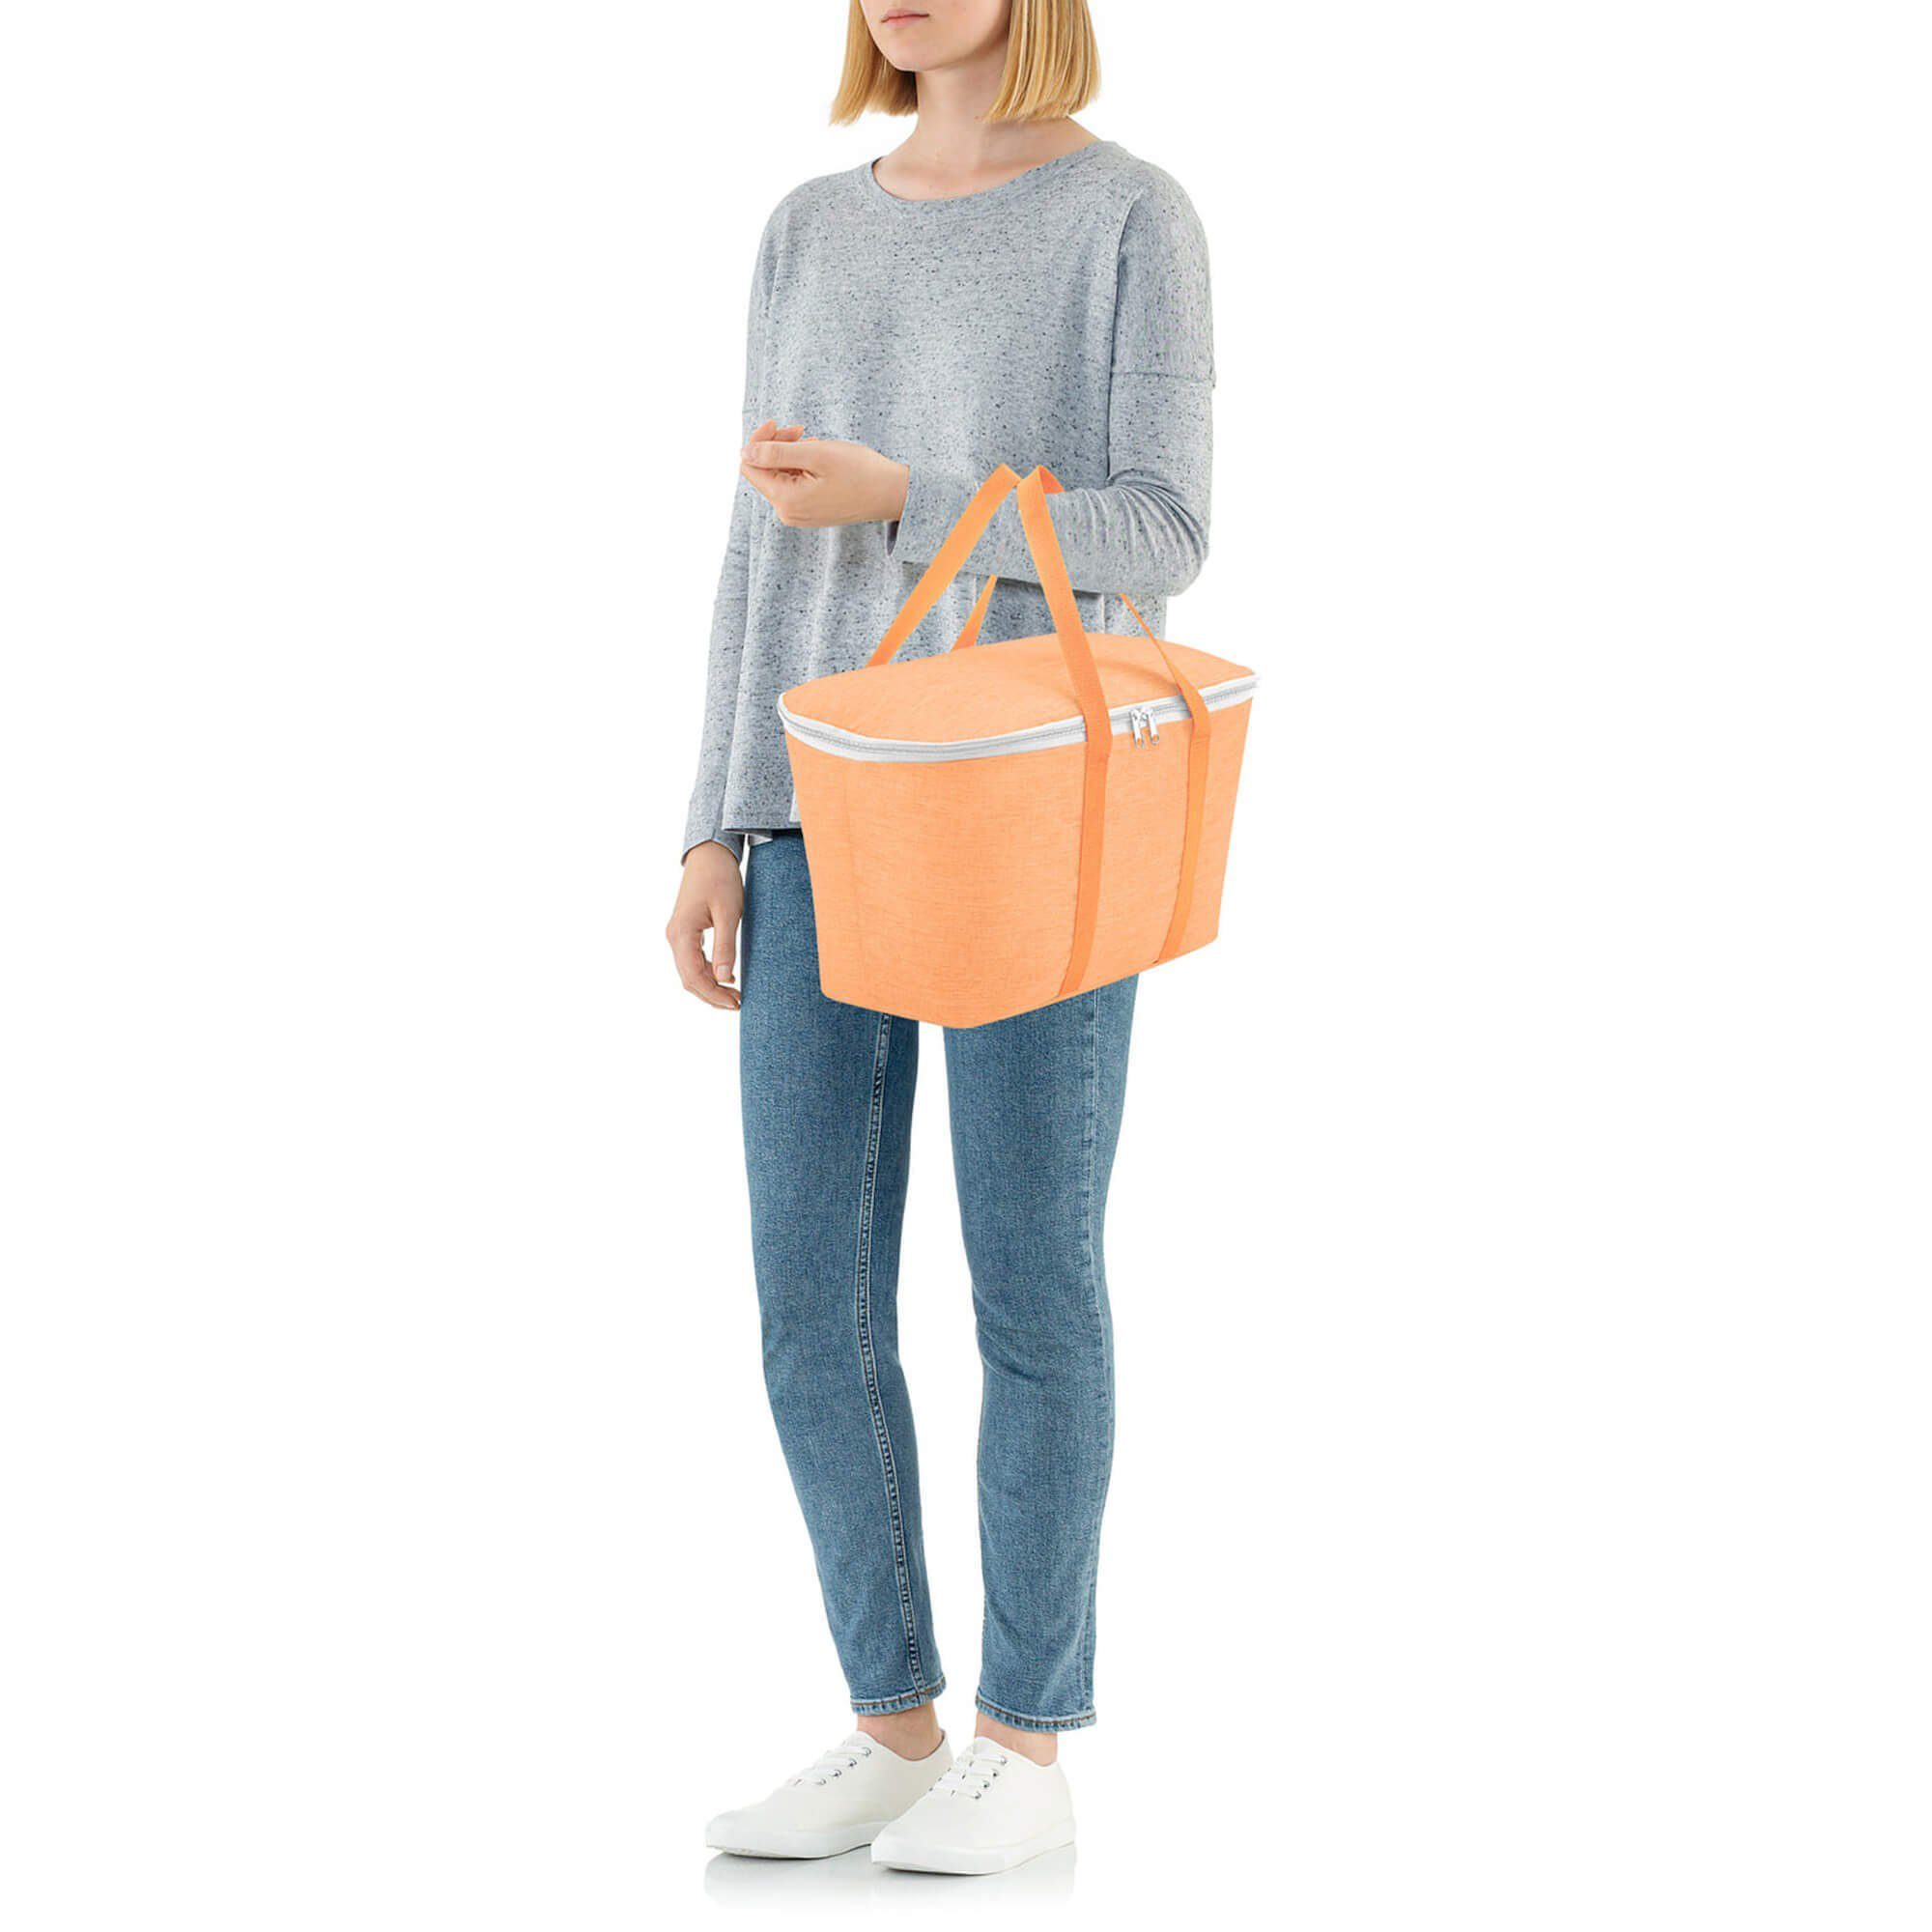 REISENTHEL® Einkaufsbeutel thermo coolerbag 20 Kühltasche twist l 44.5 - apricot cm